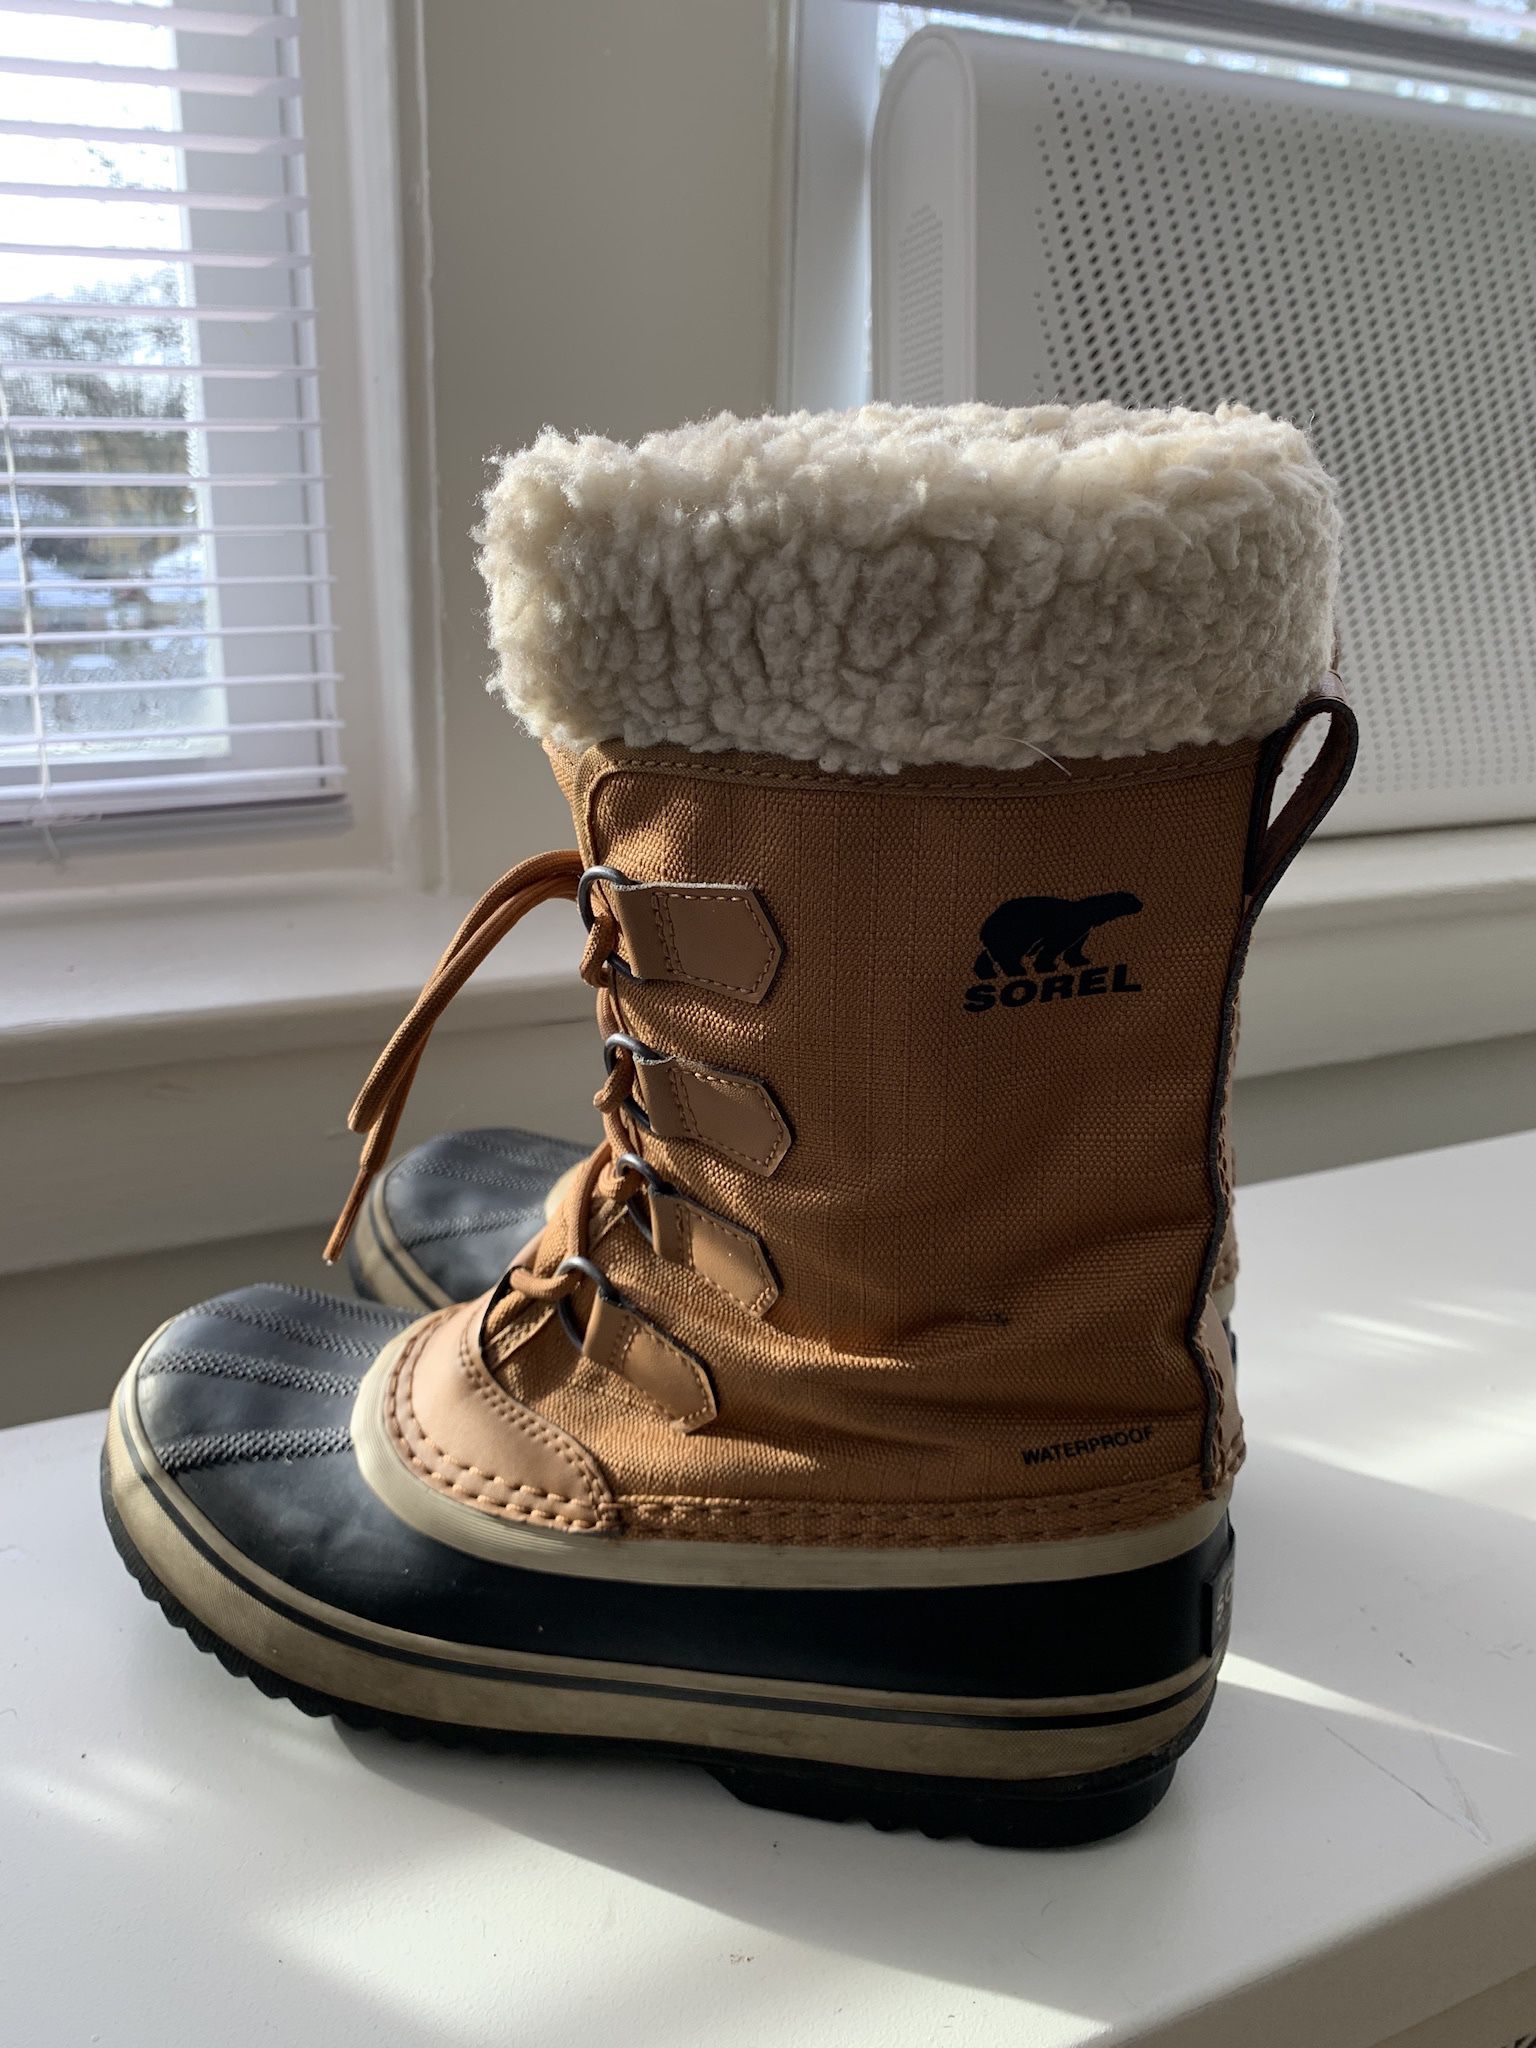 Womens Sorel Waterproof Winter Snow Boots Size 8.5